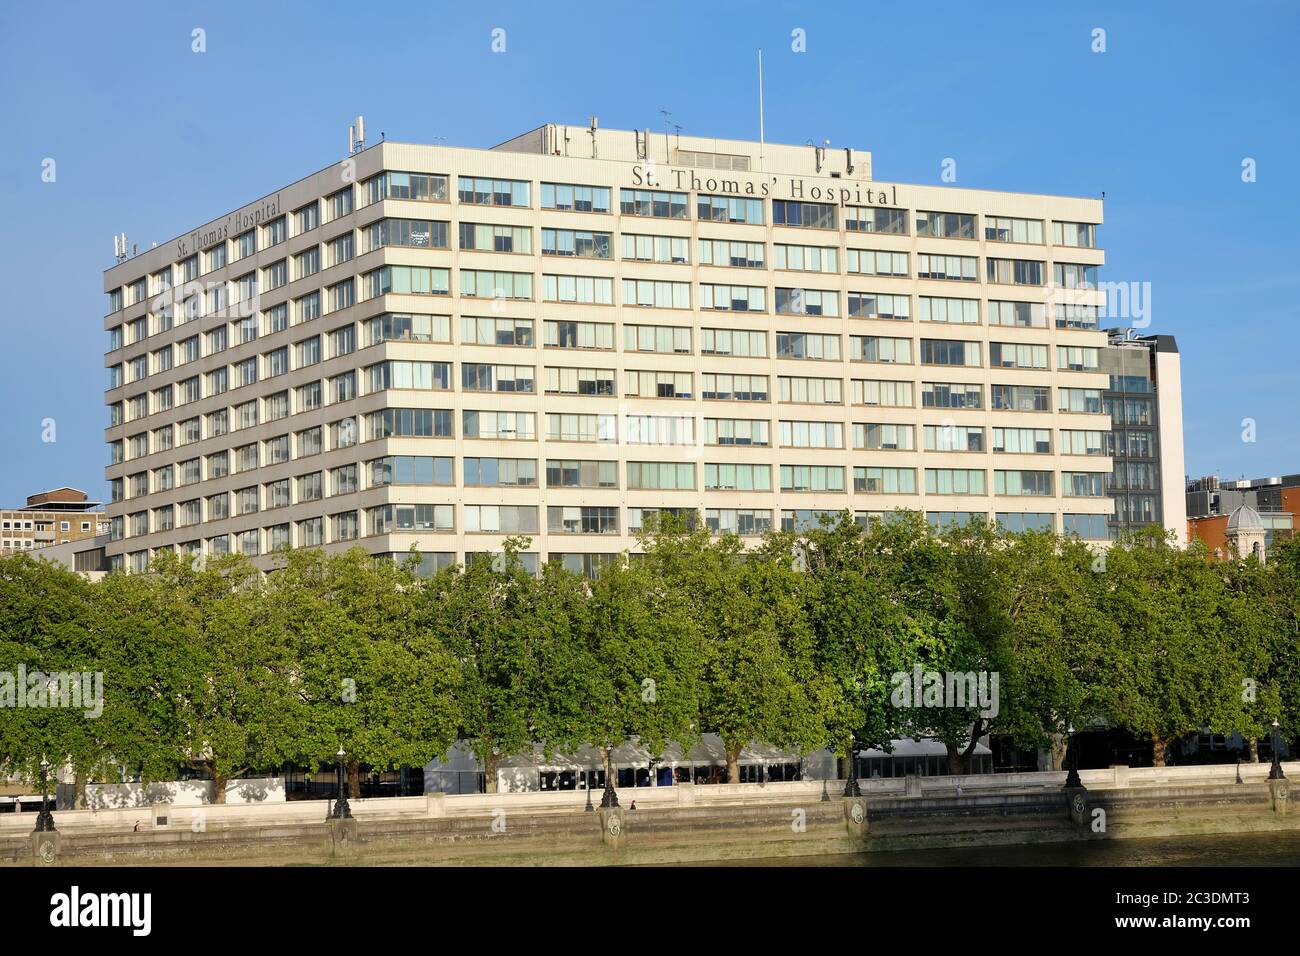 St Thomas's Hospital, Waterloo, Londra. Lato dell'edificio che si affaccia sul Tamigi e sulle Camere del Parlamento. Foto Stock